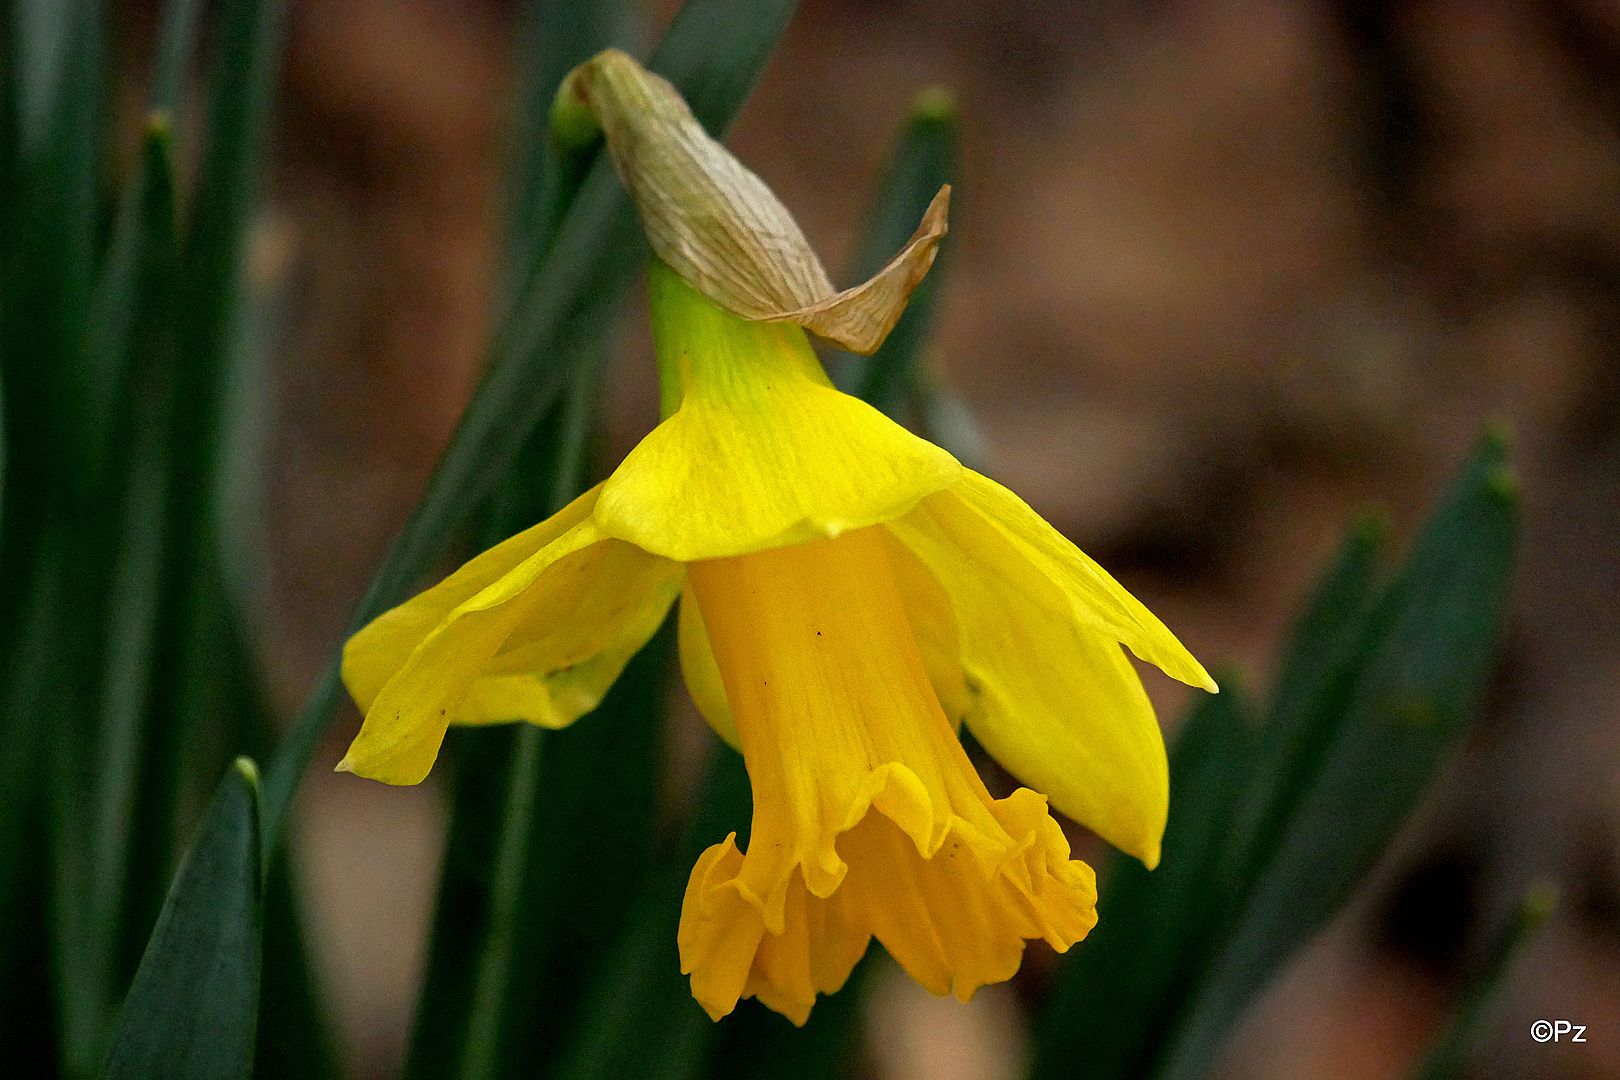 Mittwochsblümchen: Die erste Blüte einer gelben Narzisse ...